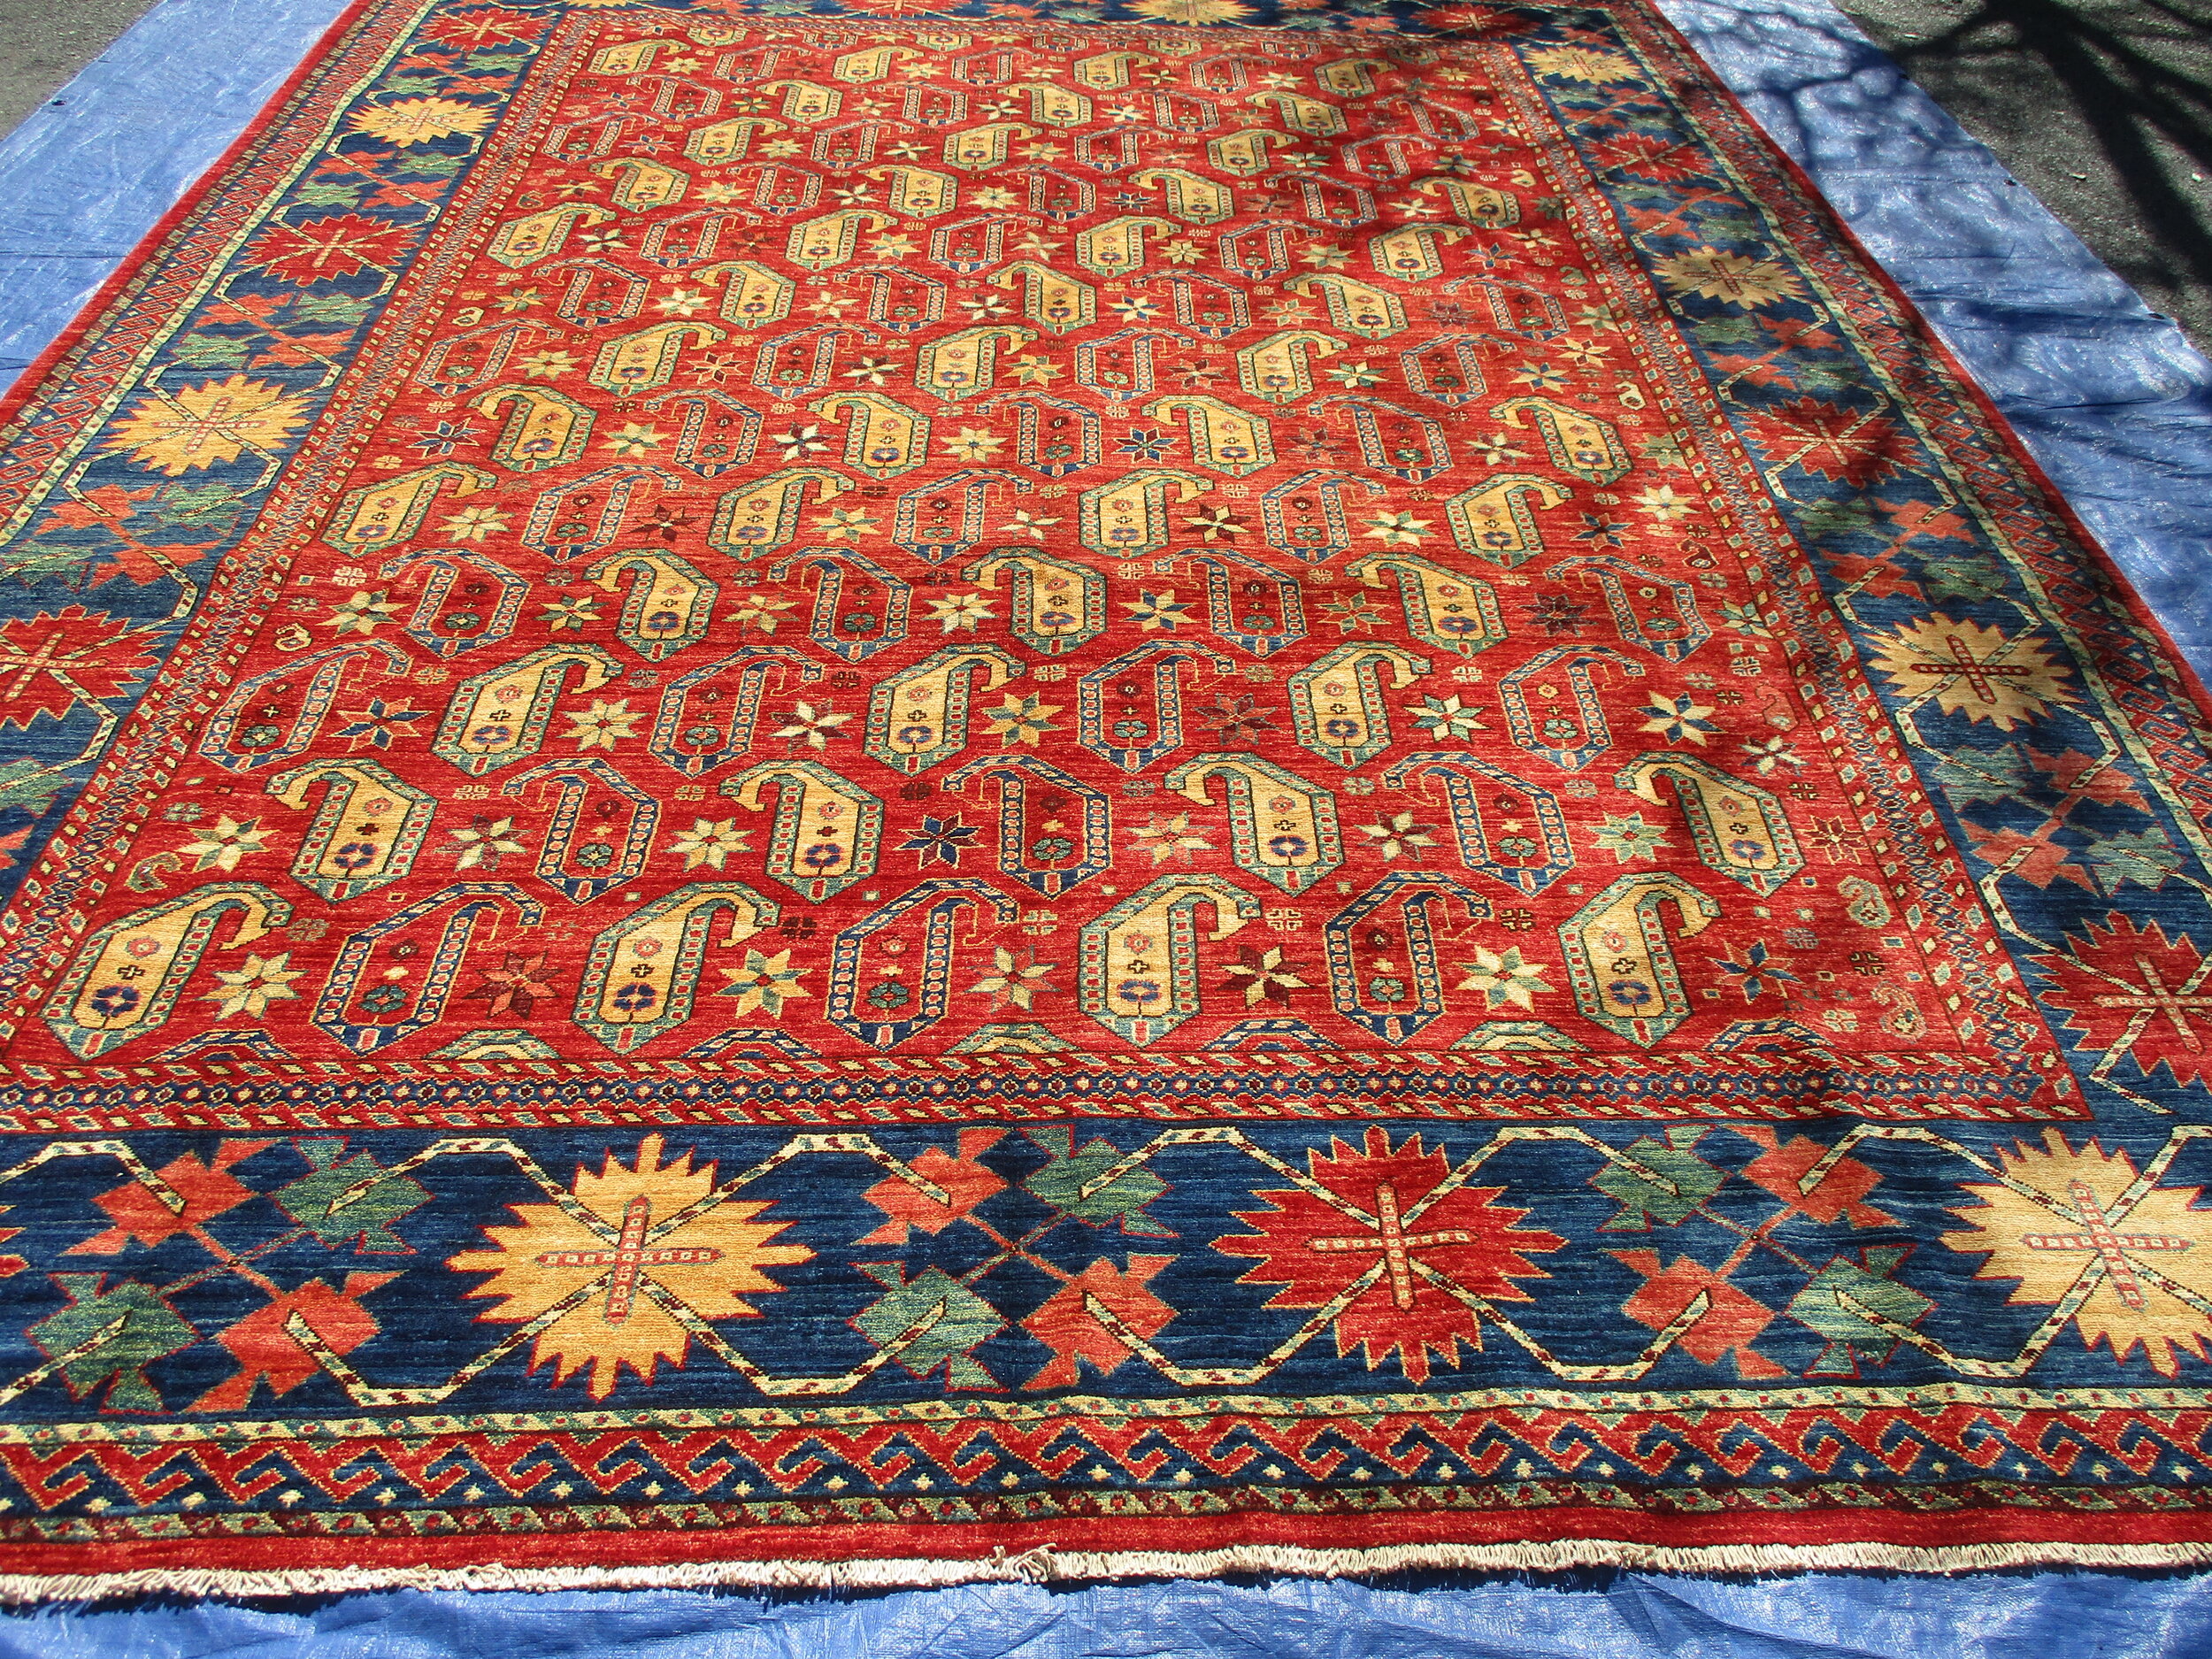 9x12-Afghan-tribal-rug.JPG